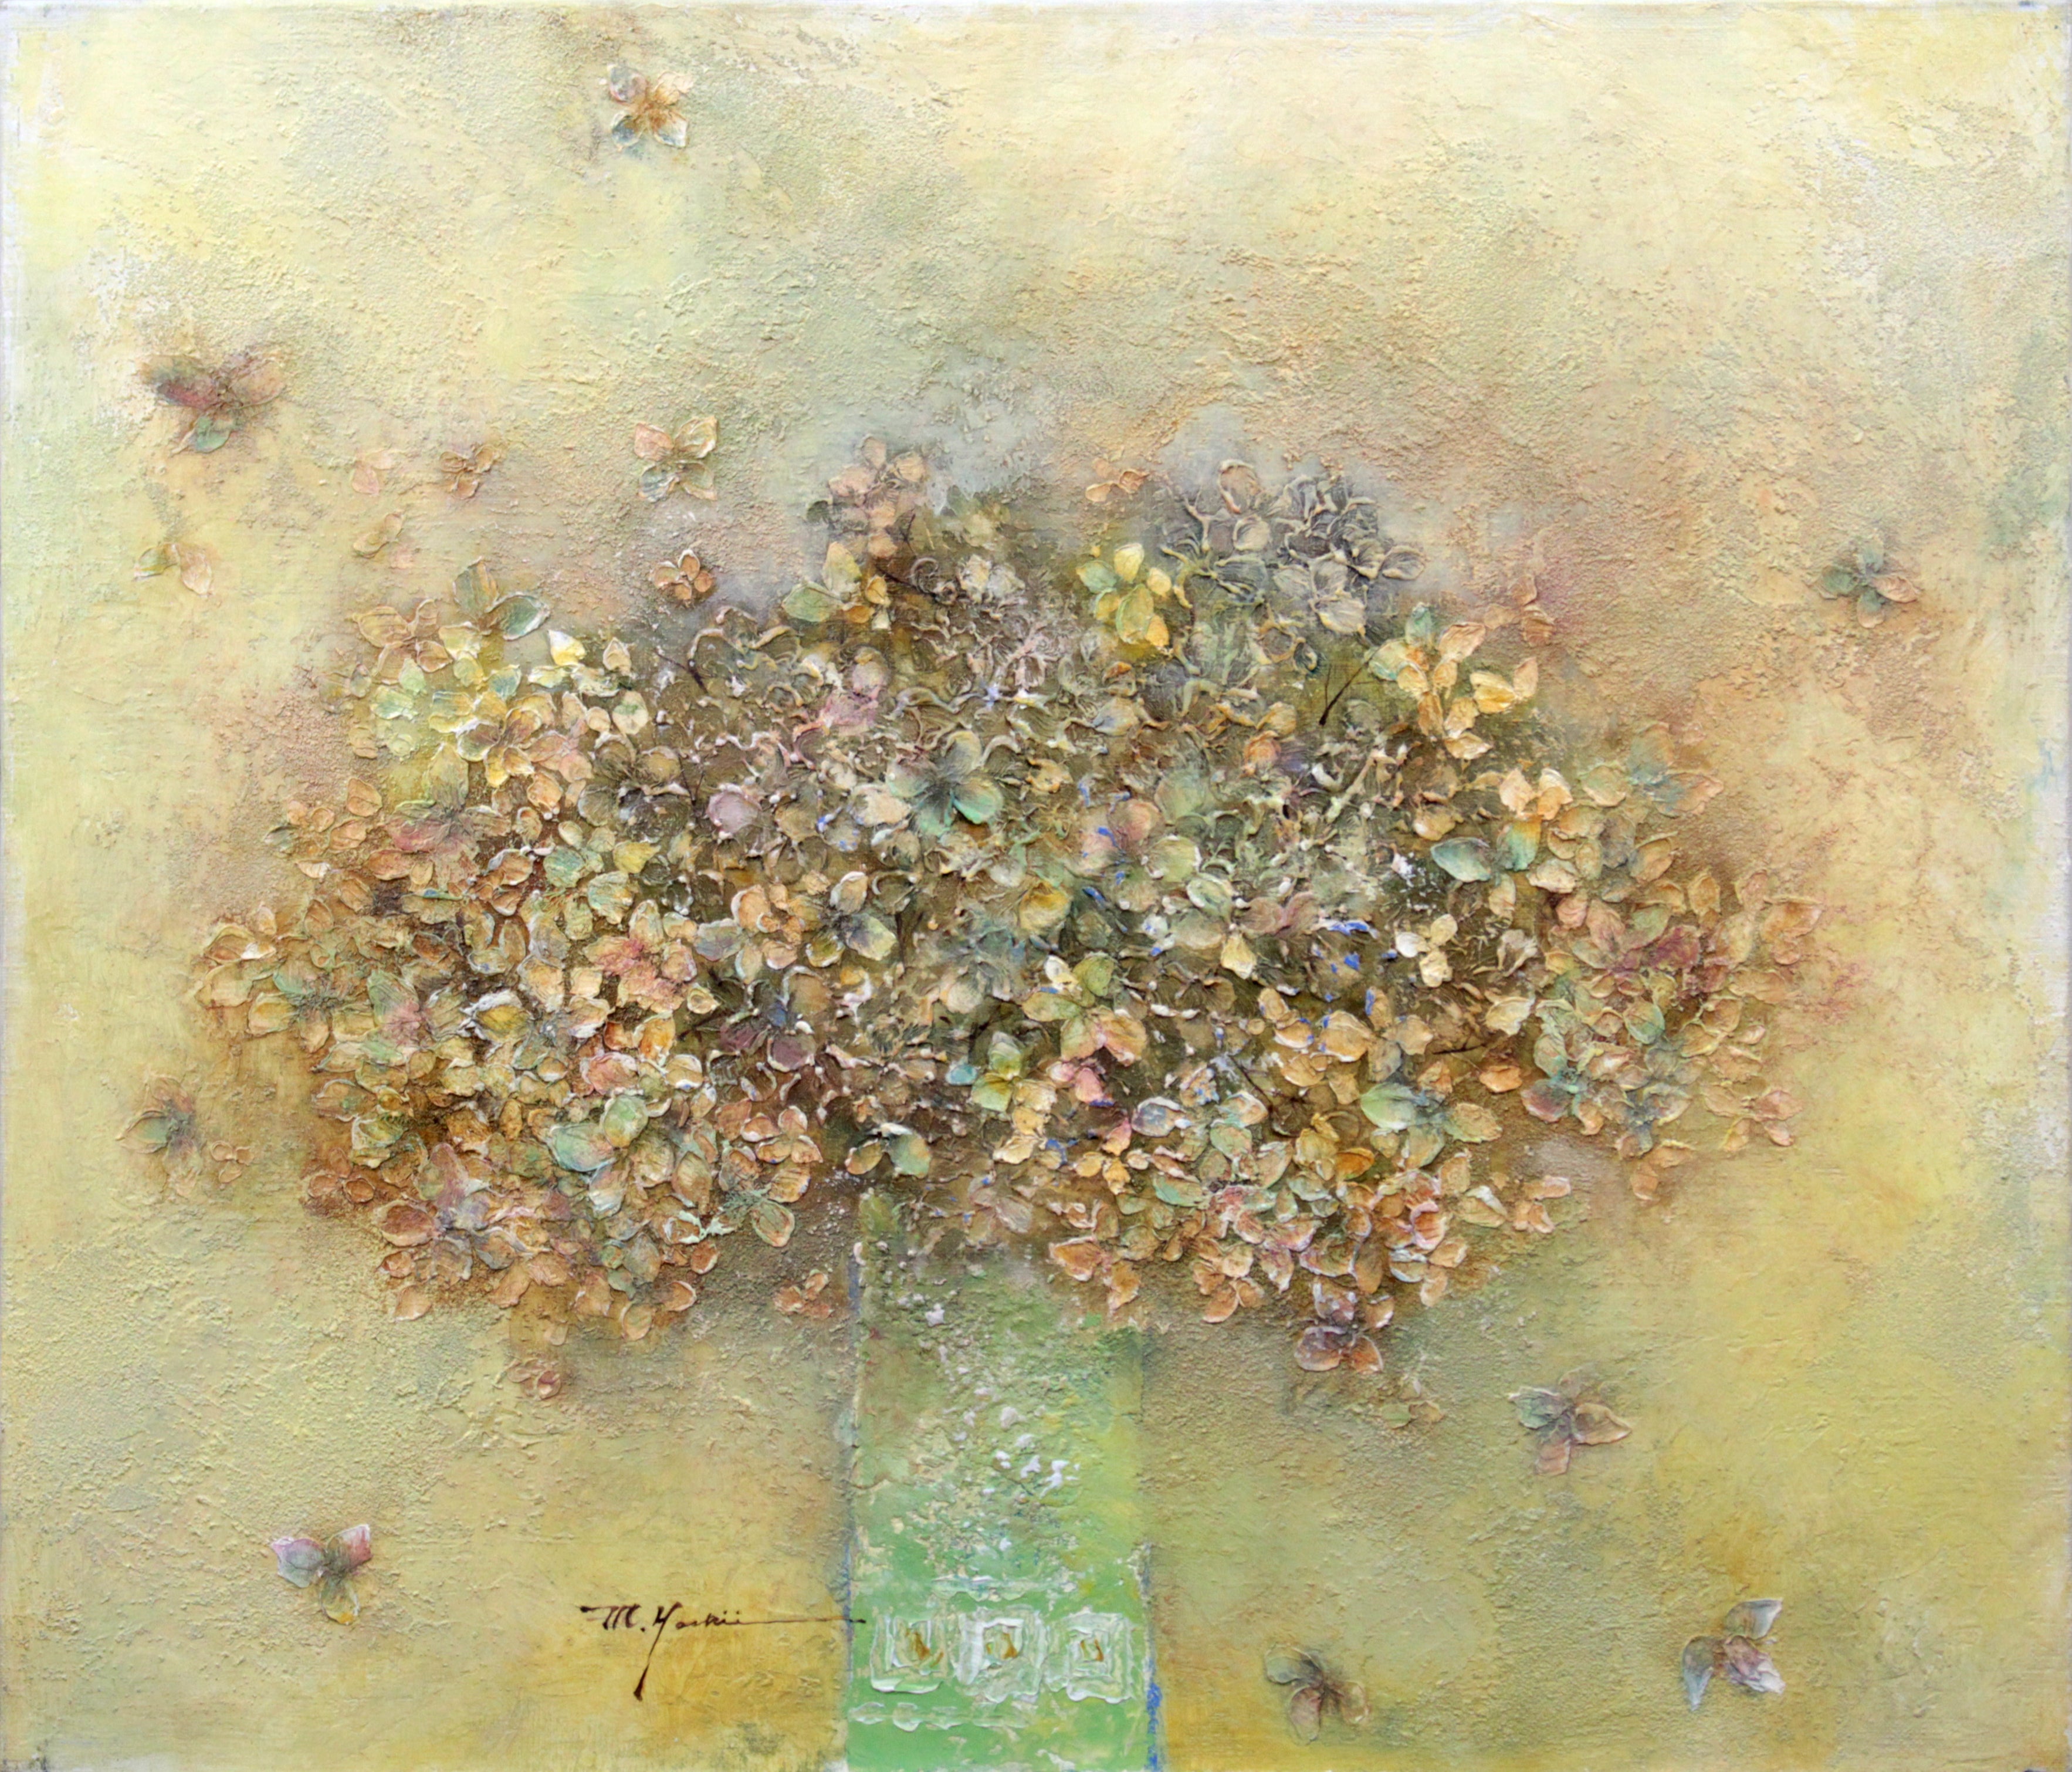 吉井光子 『花の音』 油彩画 - 北海道画廊